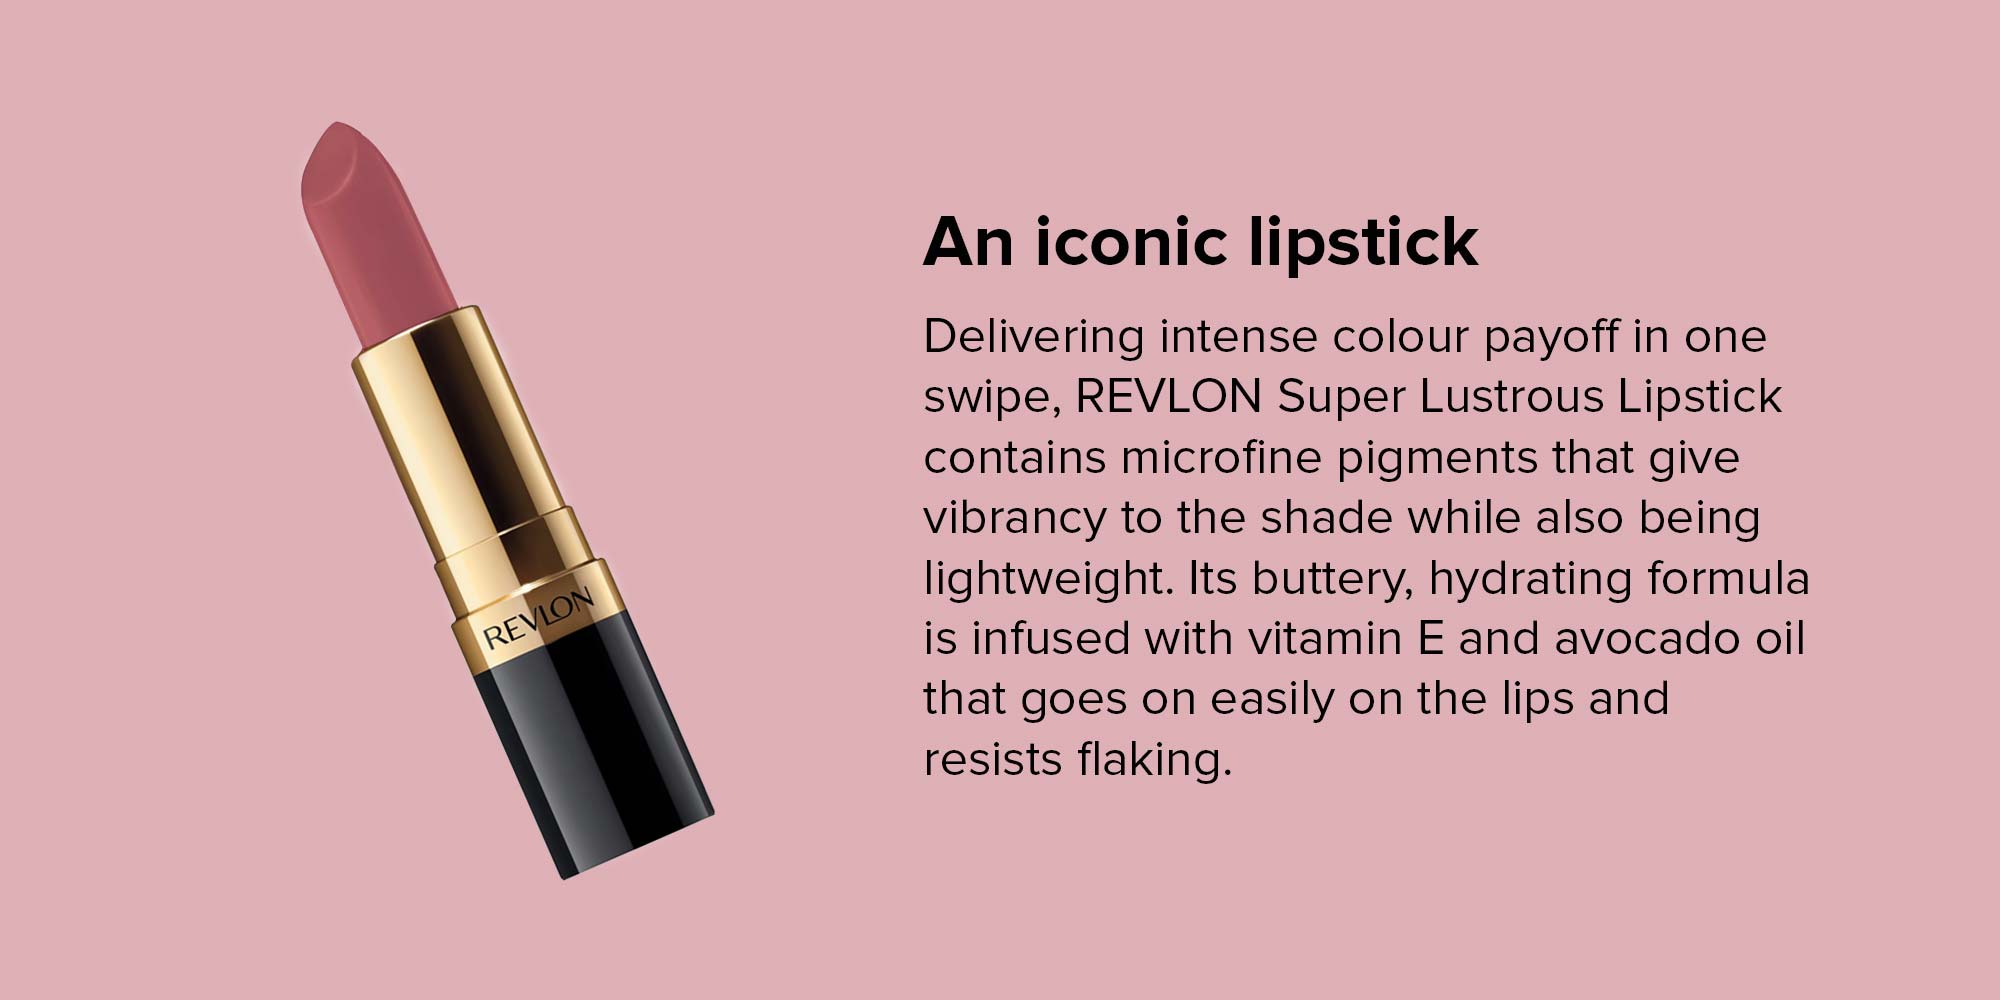 Super Lustrous Lipstick Mauve